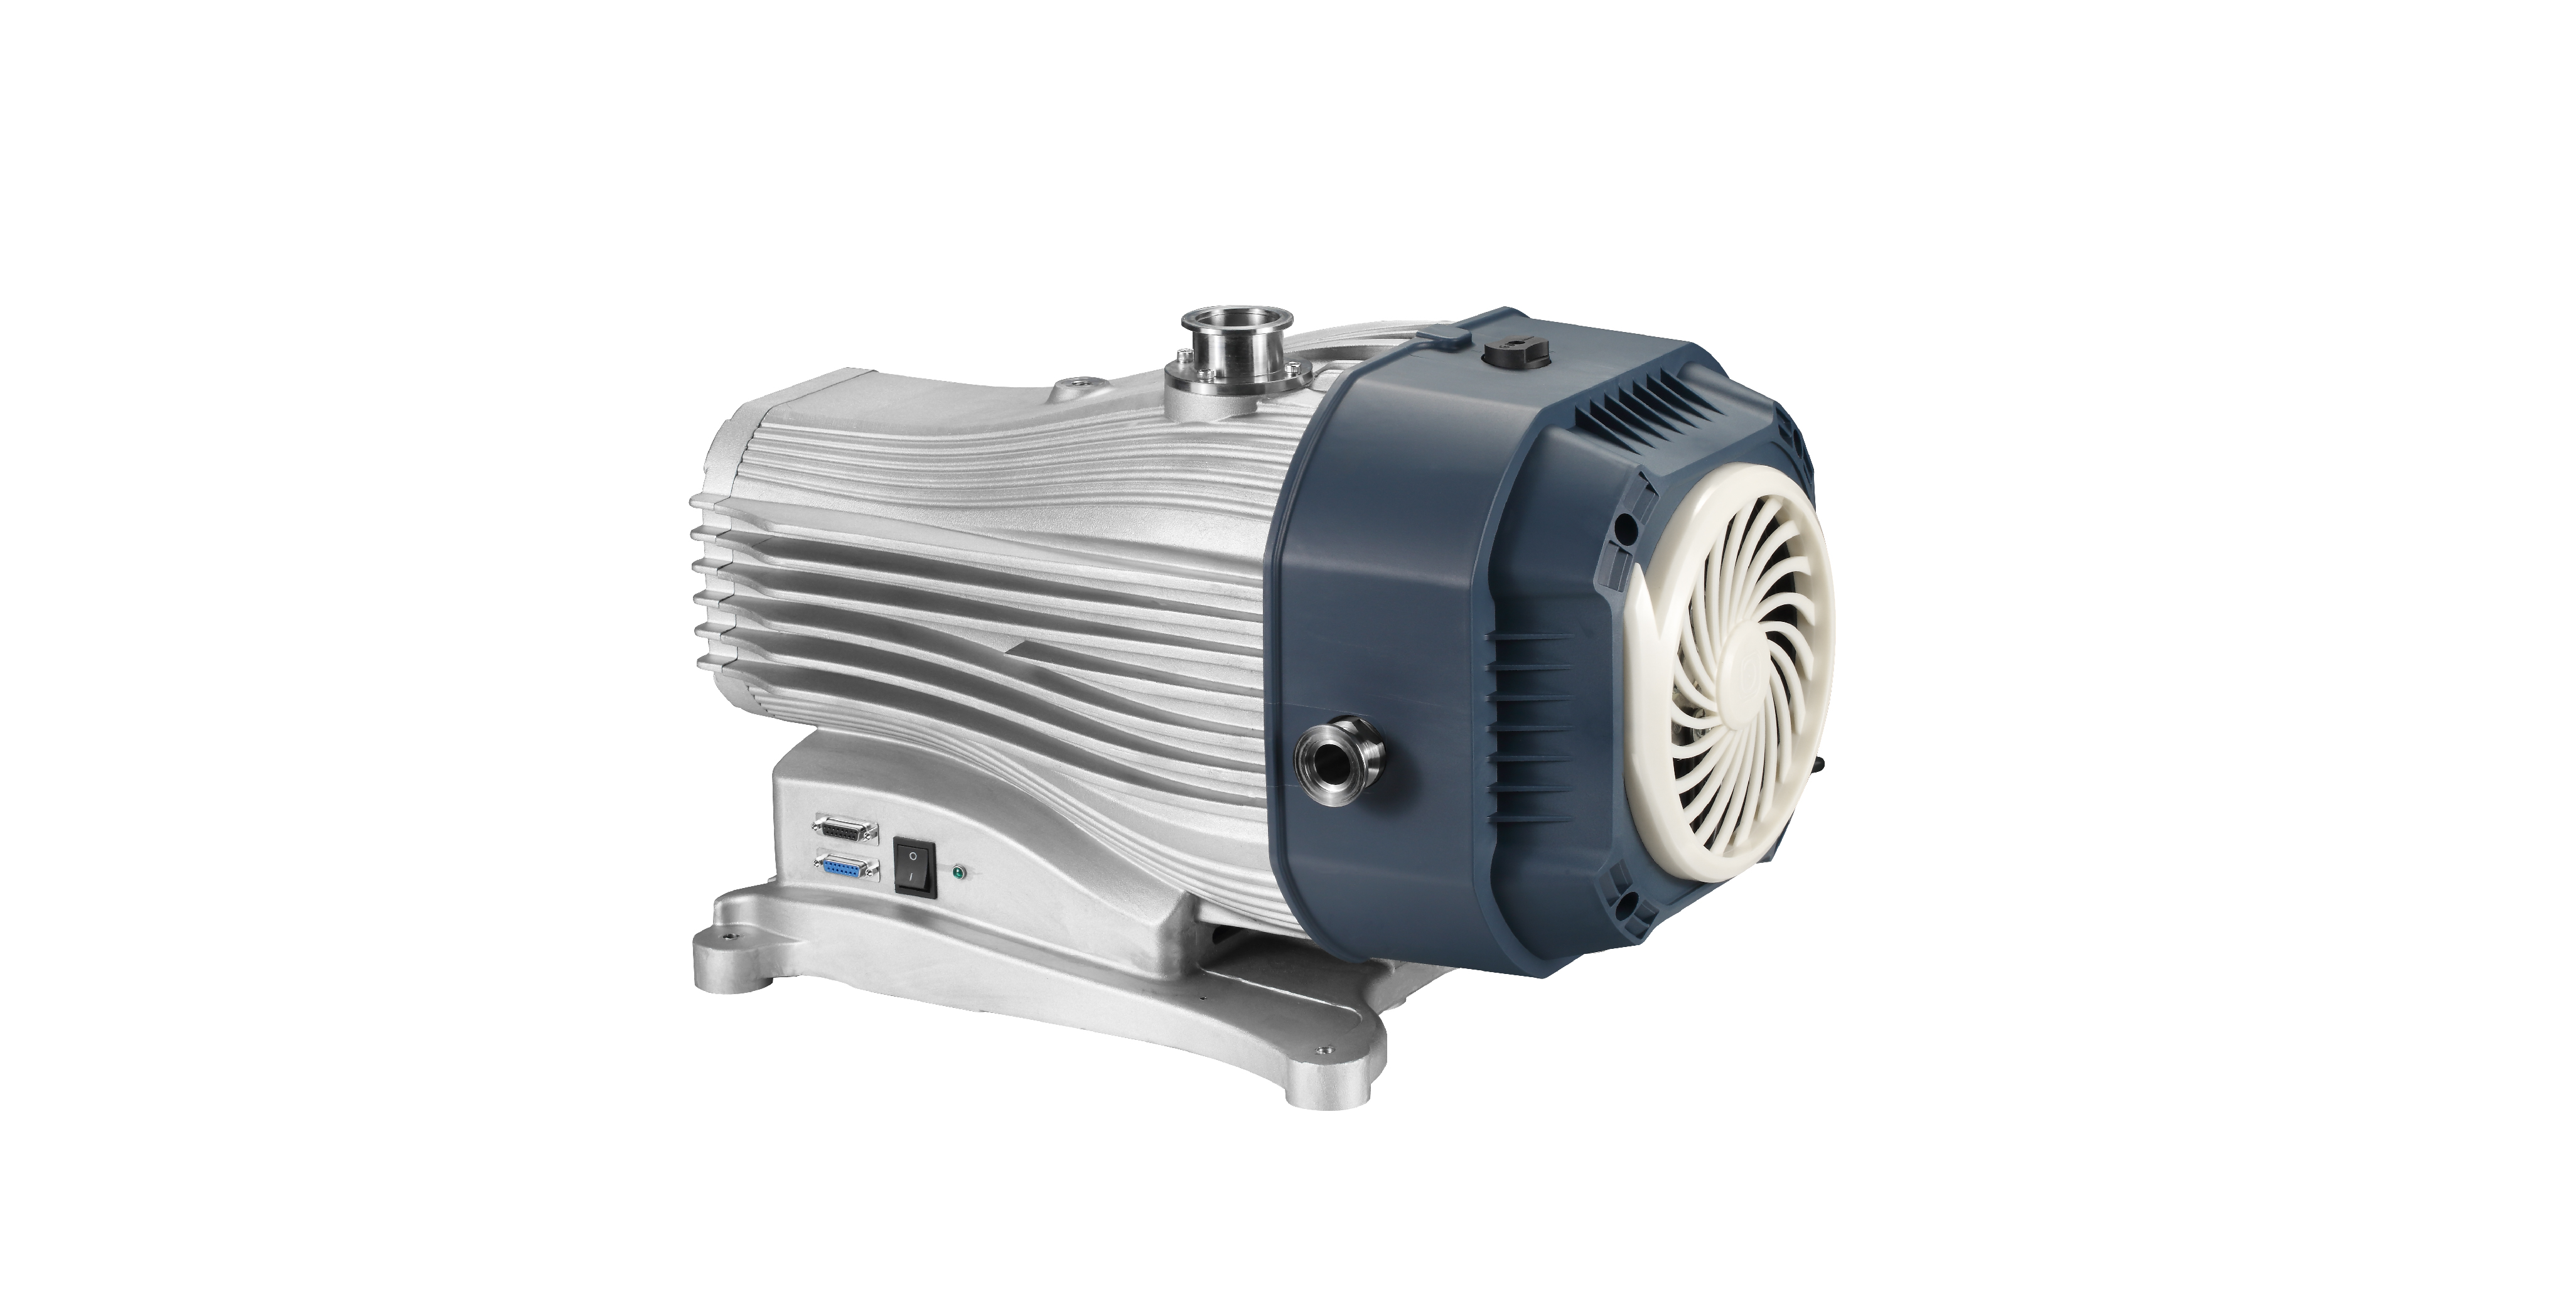 鲍斯真空泵涡旋干泵IDSP16真空泵:新一代的无油机械泵